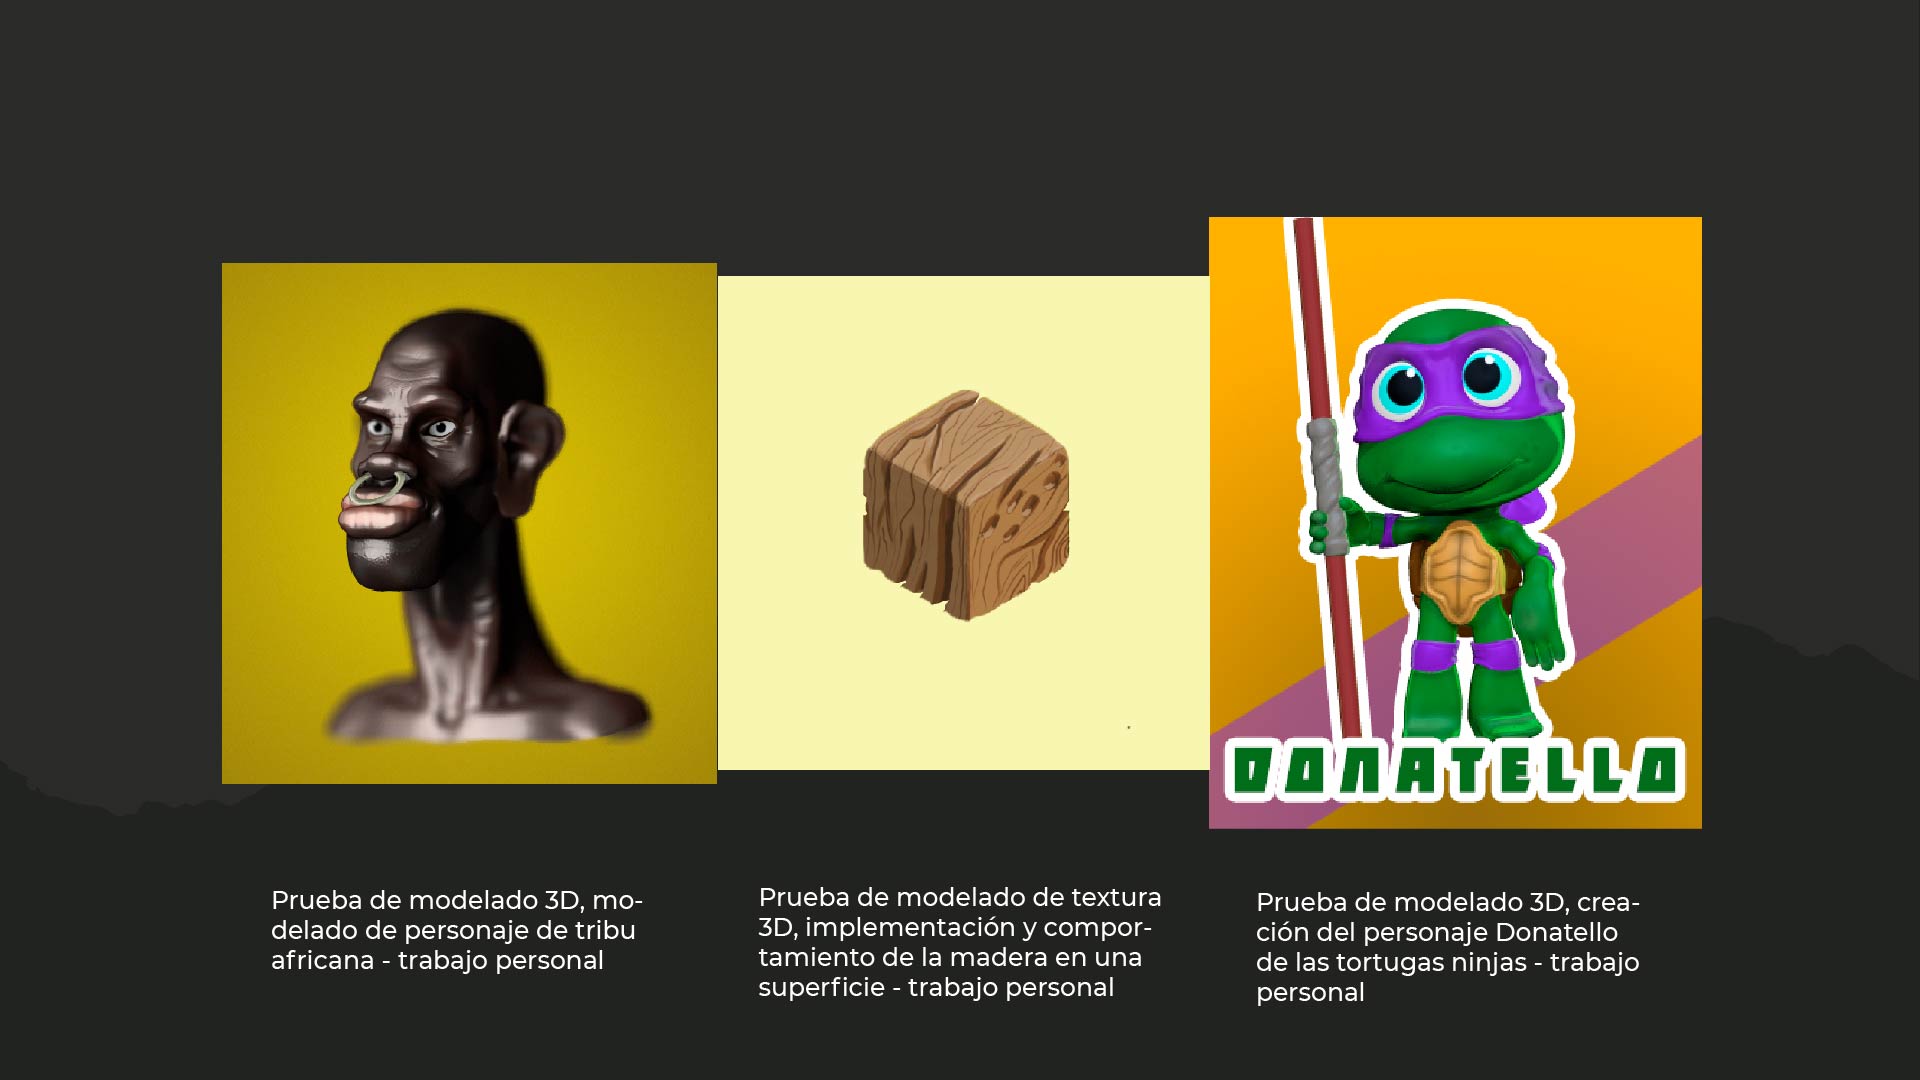 Prueba de modelado 3D, mo-

delado de personaje de tribu
africana - trabajo personal

Prueba de modelado de textura
3D, implementacion y compor-
tamiento de la madera en una
superficie - trabajo personal

 

Prueba de modelado 3D, crea-
cion del personaje Donatello
de las tortugas ninjas - trabajo
personal